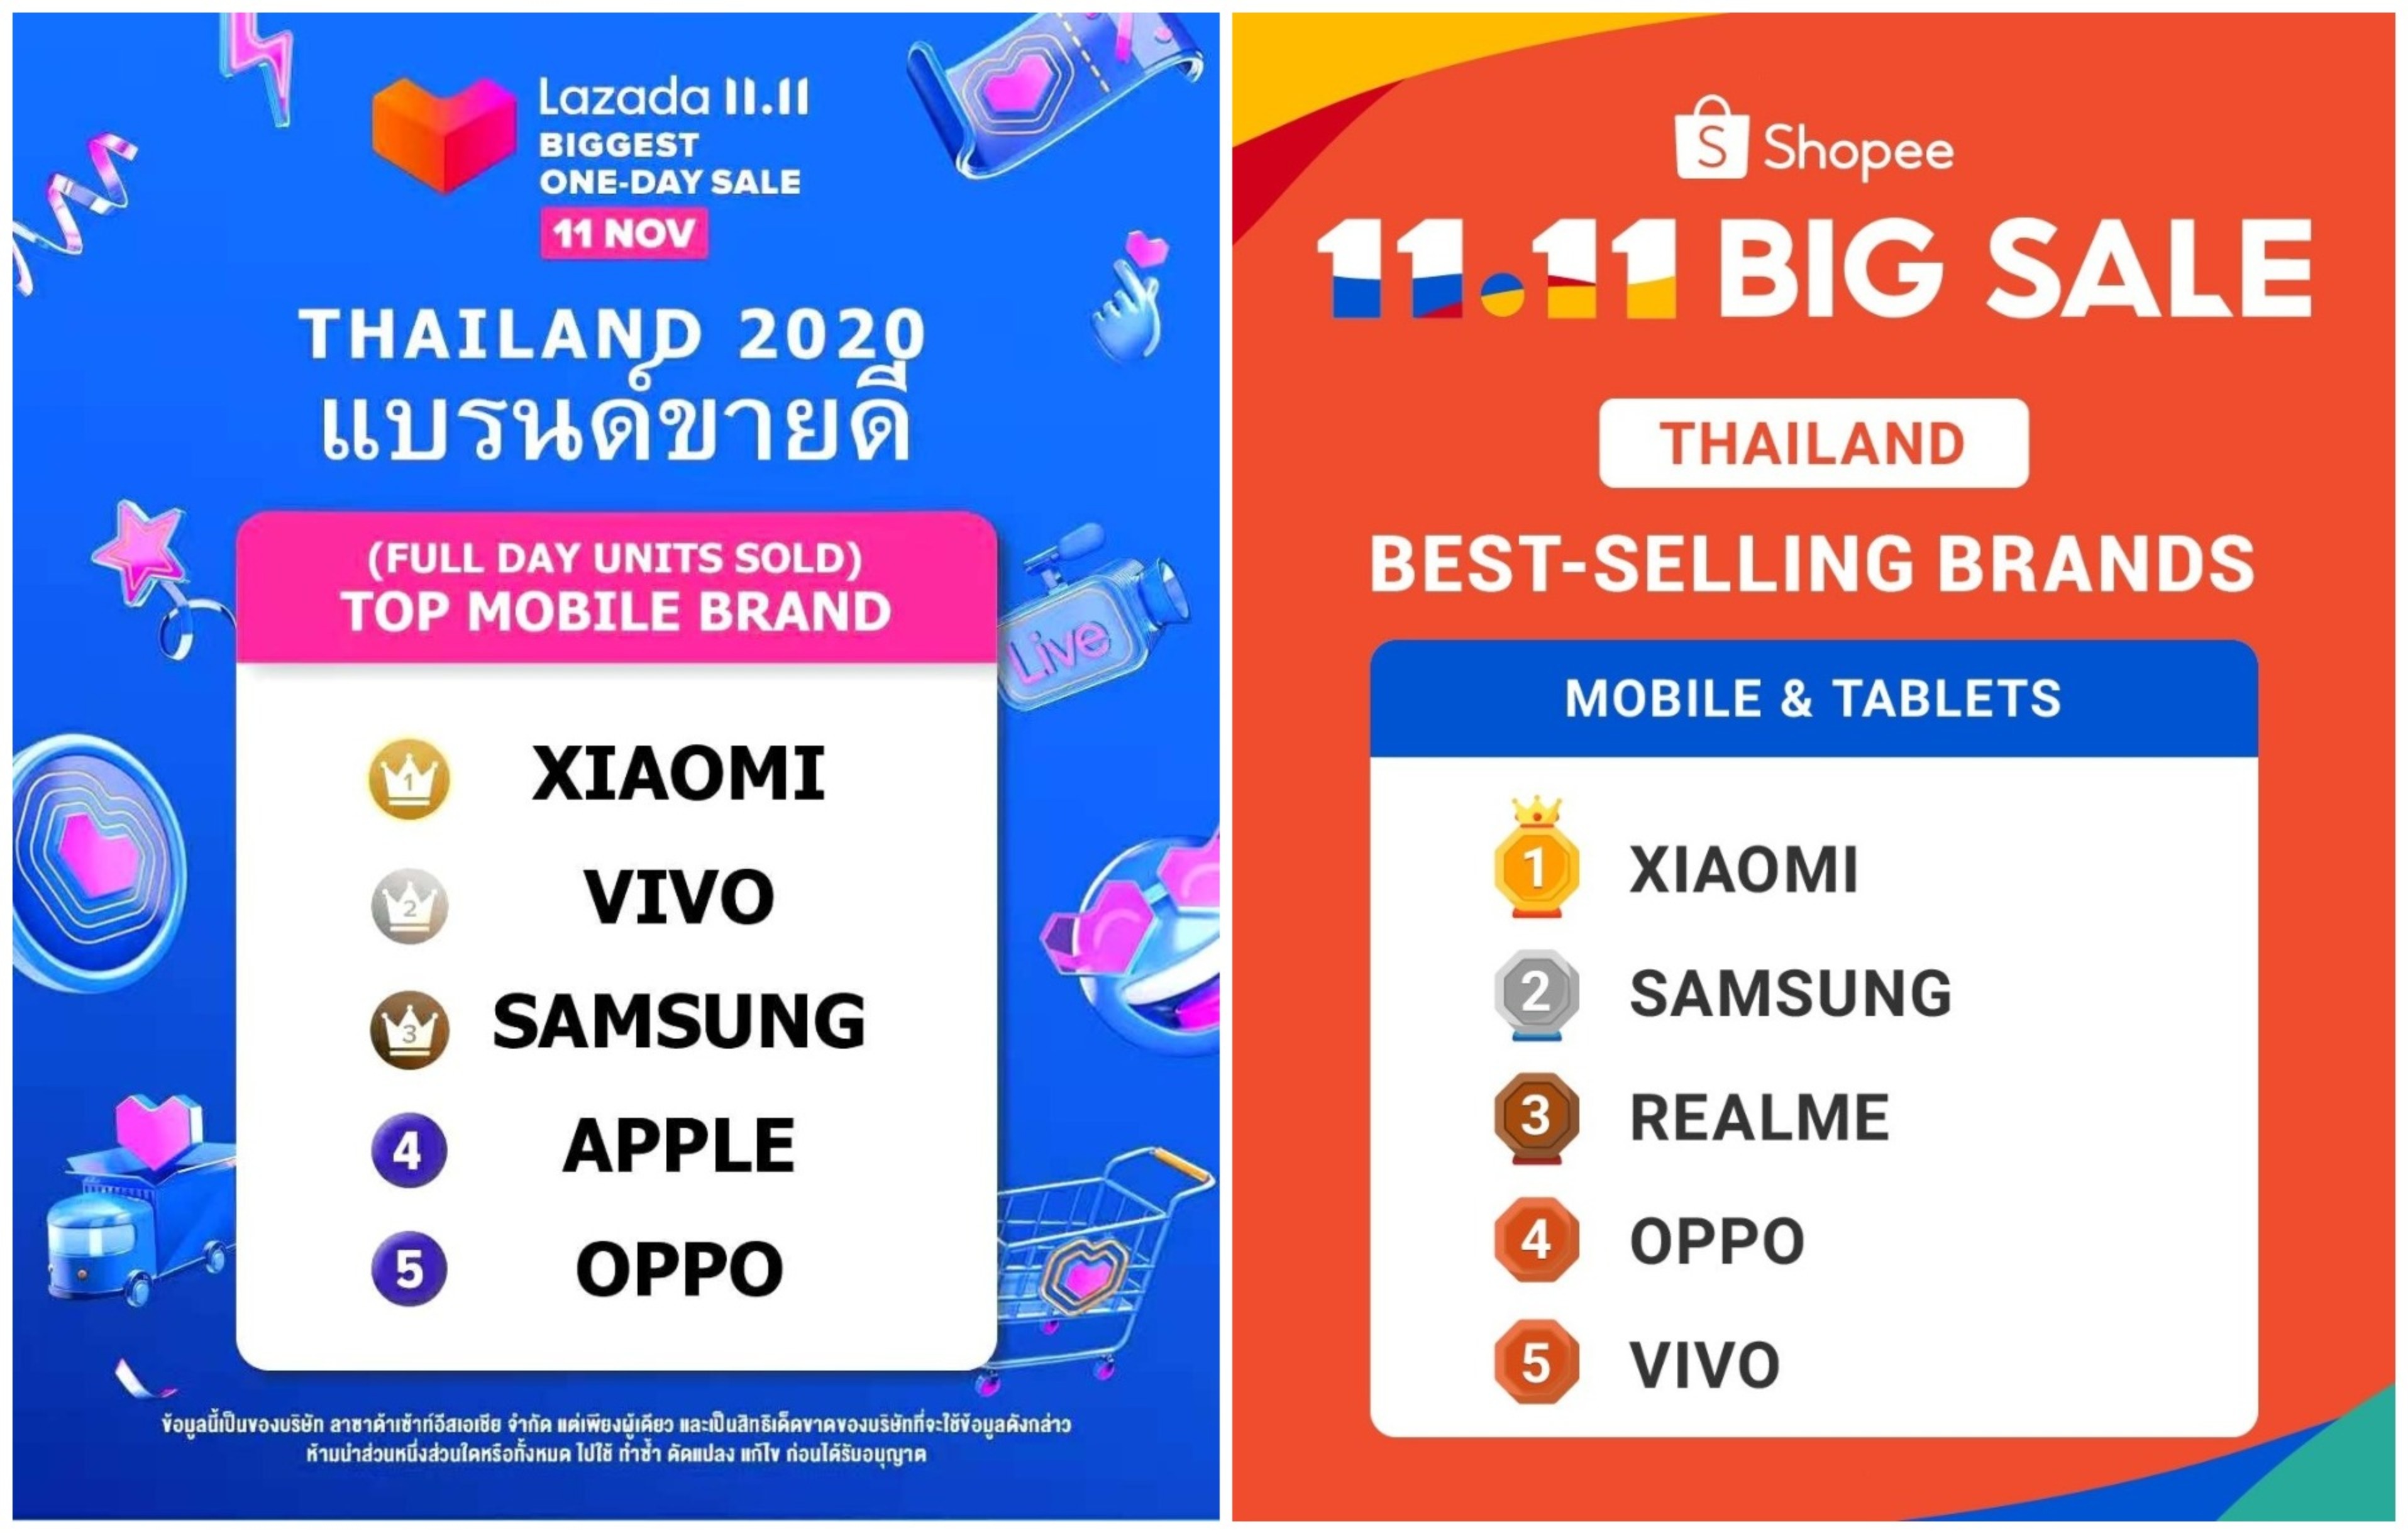 เสียวหมี่คว้าอันดับ 1 แบรนด์สมาร์ทโฟนที่ขายดีที่สุดในประเทศไทยจากแคมเปญออนไลน์ 11.11 บนอีคอมเมิร์ซชั้นนำทั้ง 3 แพลตฟอร์ม